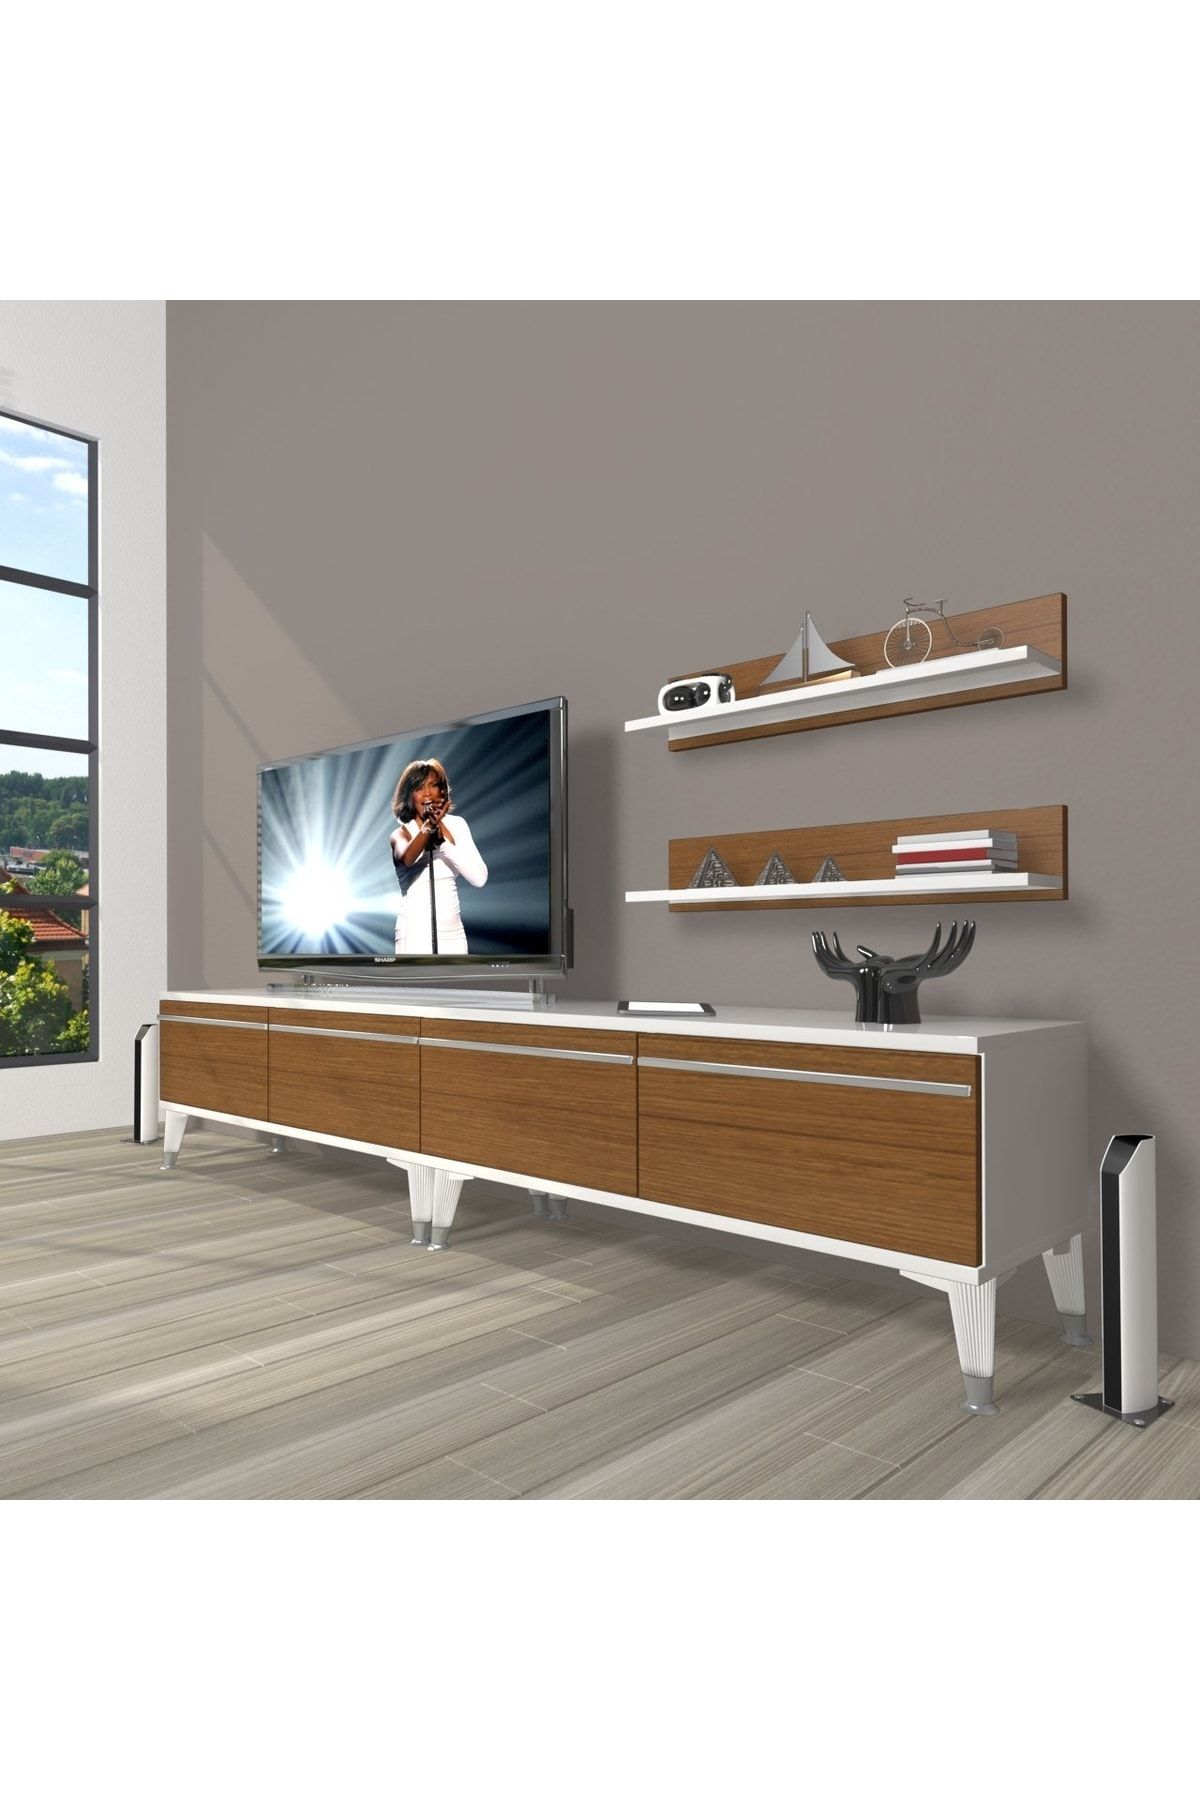 Decoraktiv Eko 200t Mdf Silver Tv Ünitesi Tv Sehpası - Beyaz - Ceviz